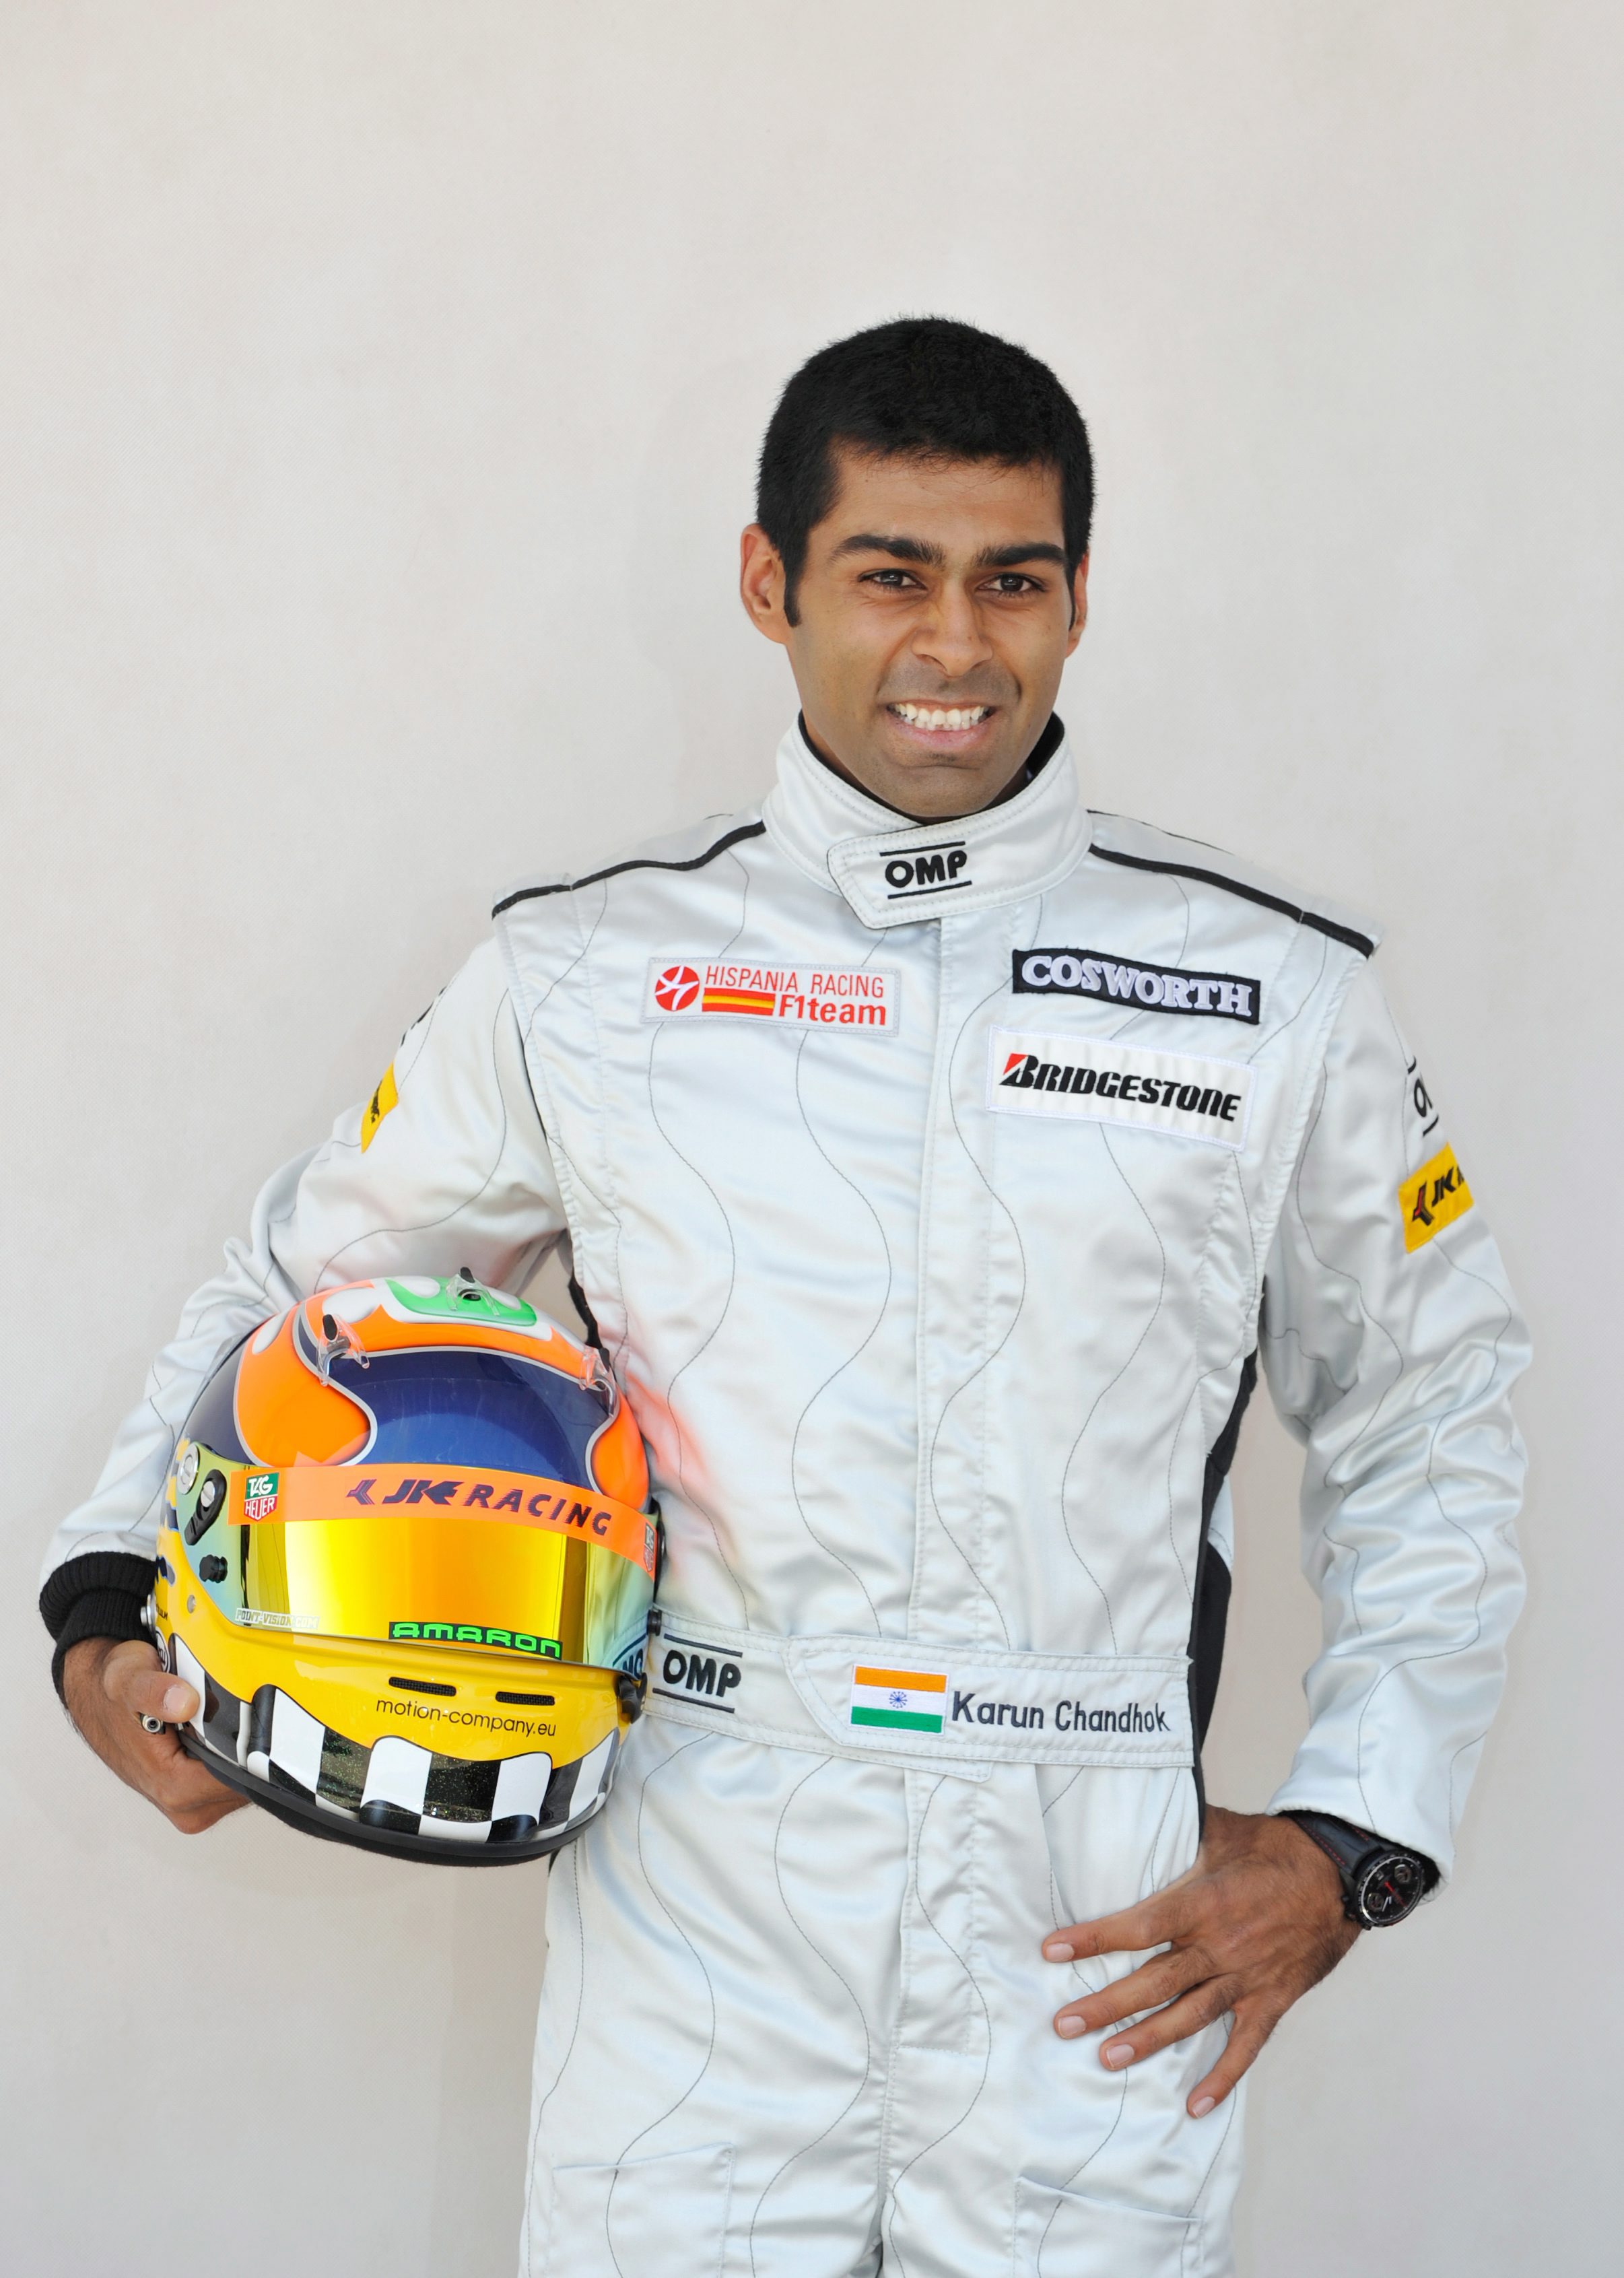 Chandhok auf der Formel-1-Rennstrecke in Bahrain im Jahr 2010, als er seinen berührenden Moment mit Schumacher erlebte